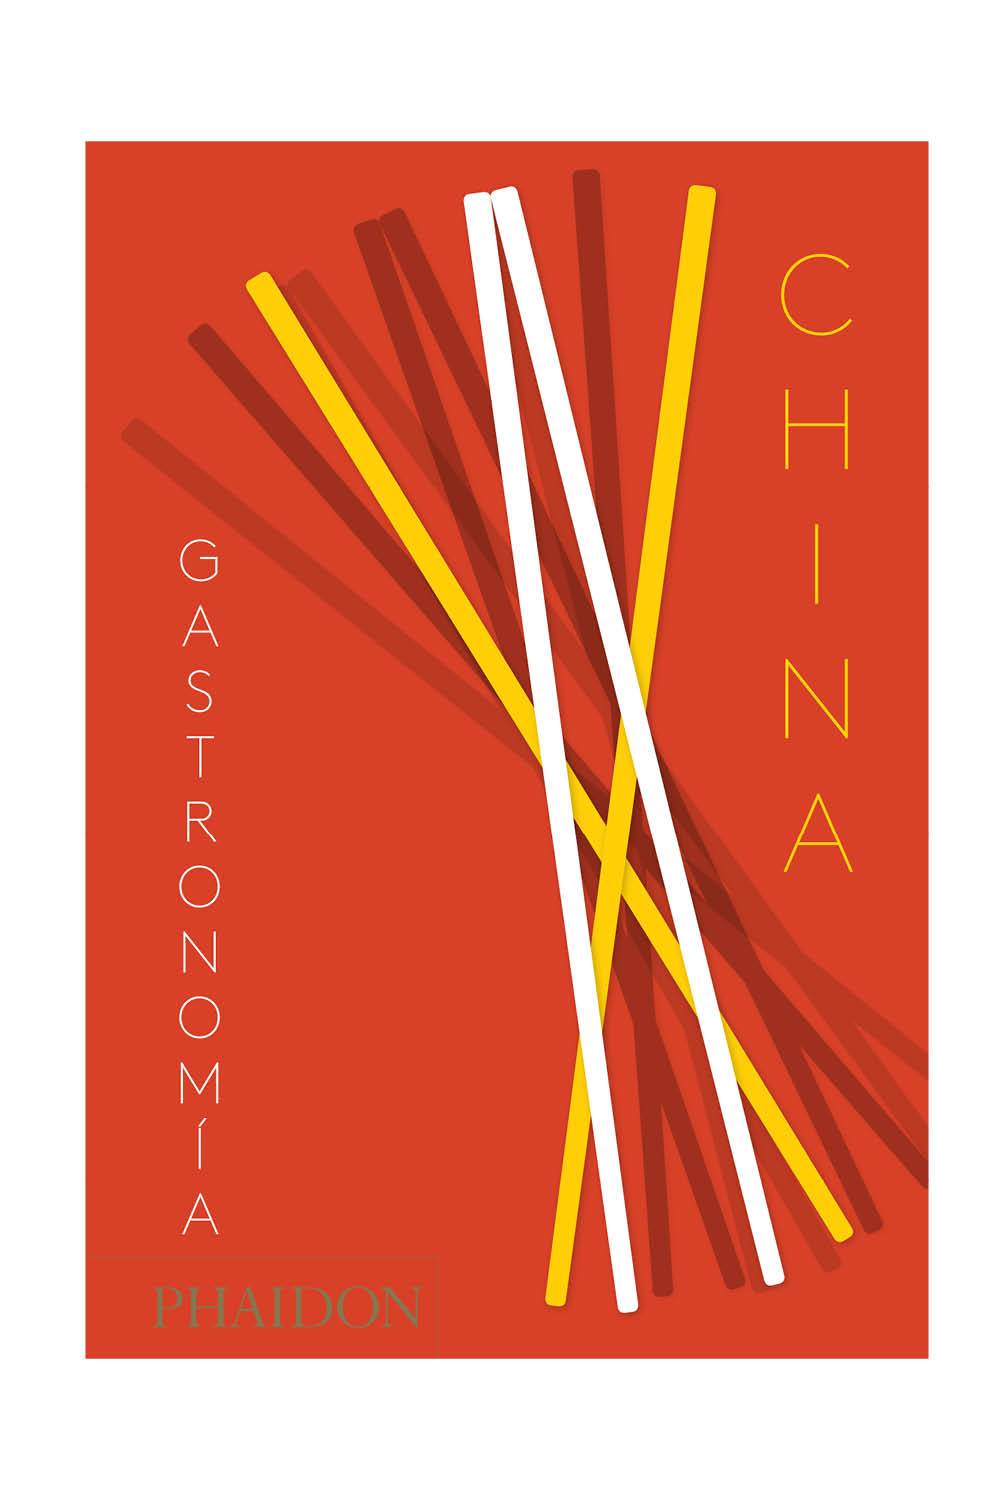 libros navidad 2020 gastronomia china